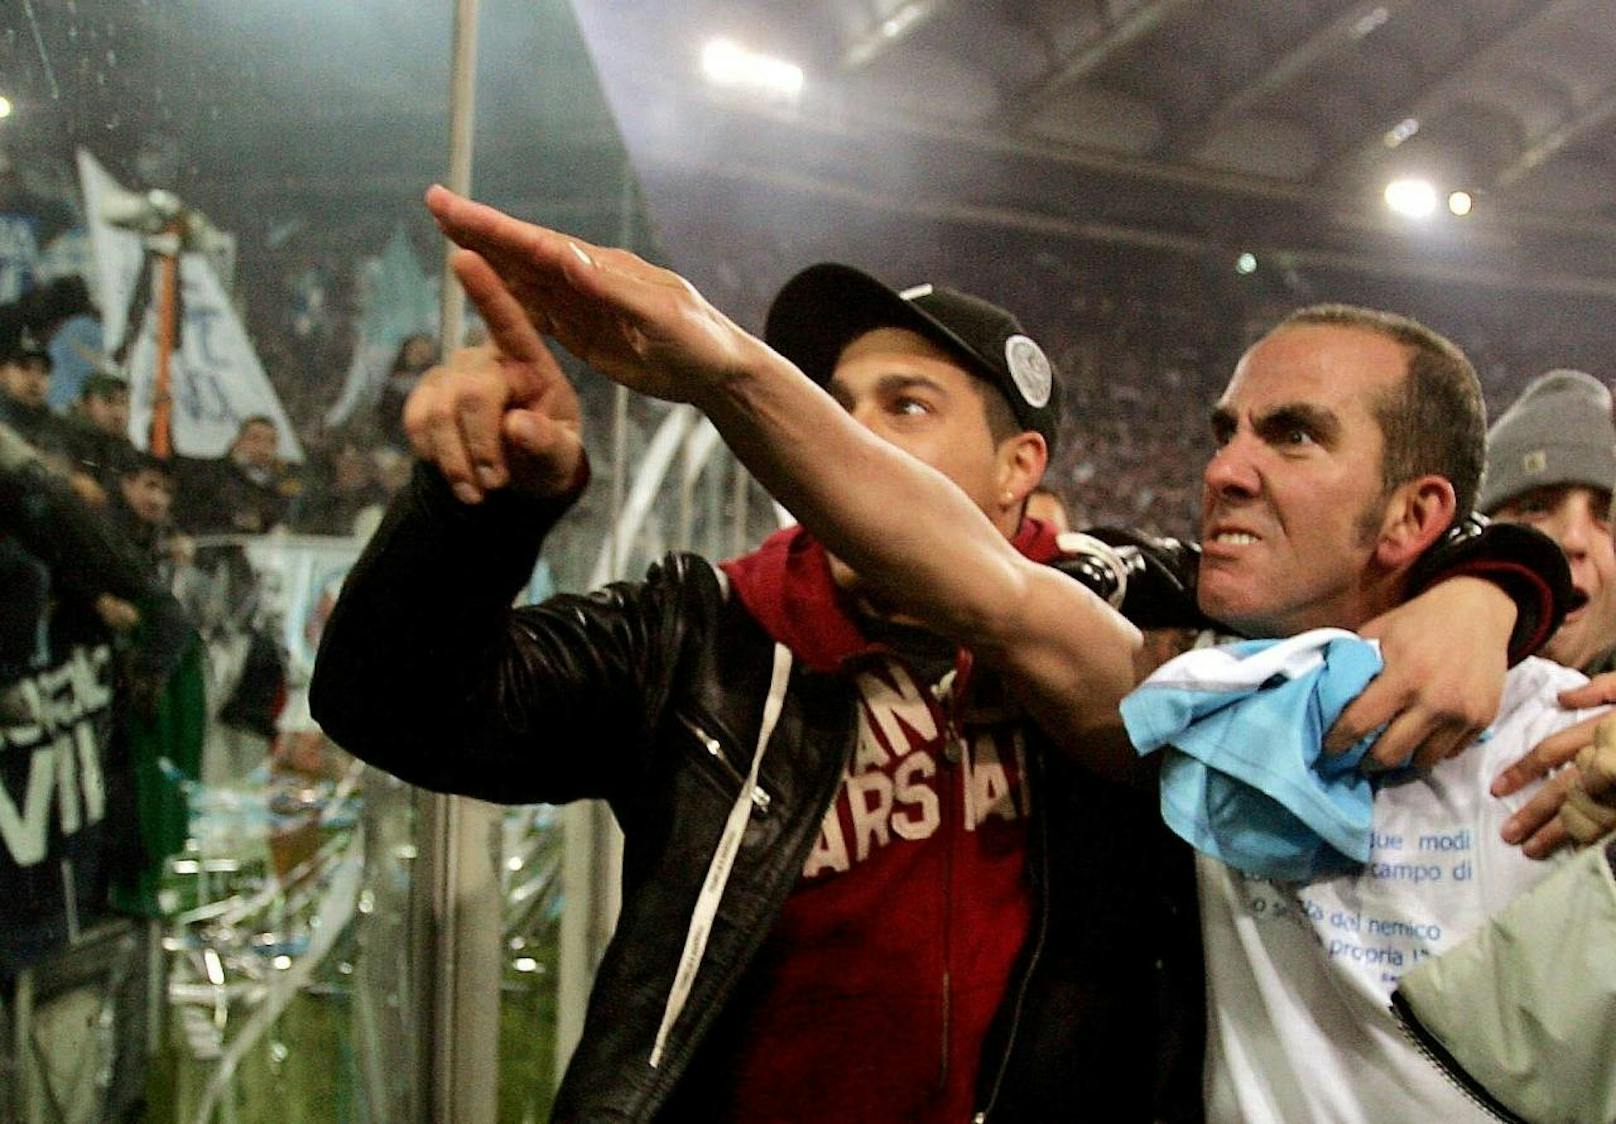 Den 2:1-Erfolg von Lazio Rom im Derby gegen die AS Roma feierte Paolo di Canio 2005 mit dem ausgestreckten rechten Arm - dem Römischen Gruß. Diese Geste löste in Italien eine Faschismus-Debatte aus. Der Spieler wurde mit einer Geldstrafe belegt. 